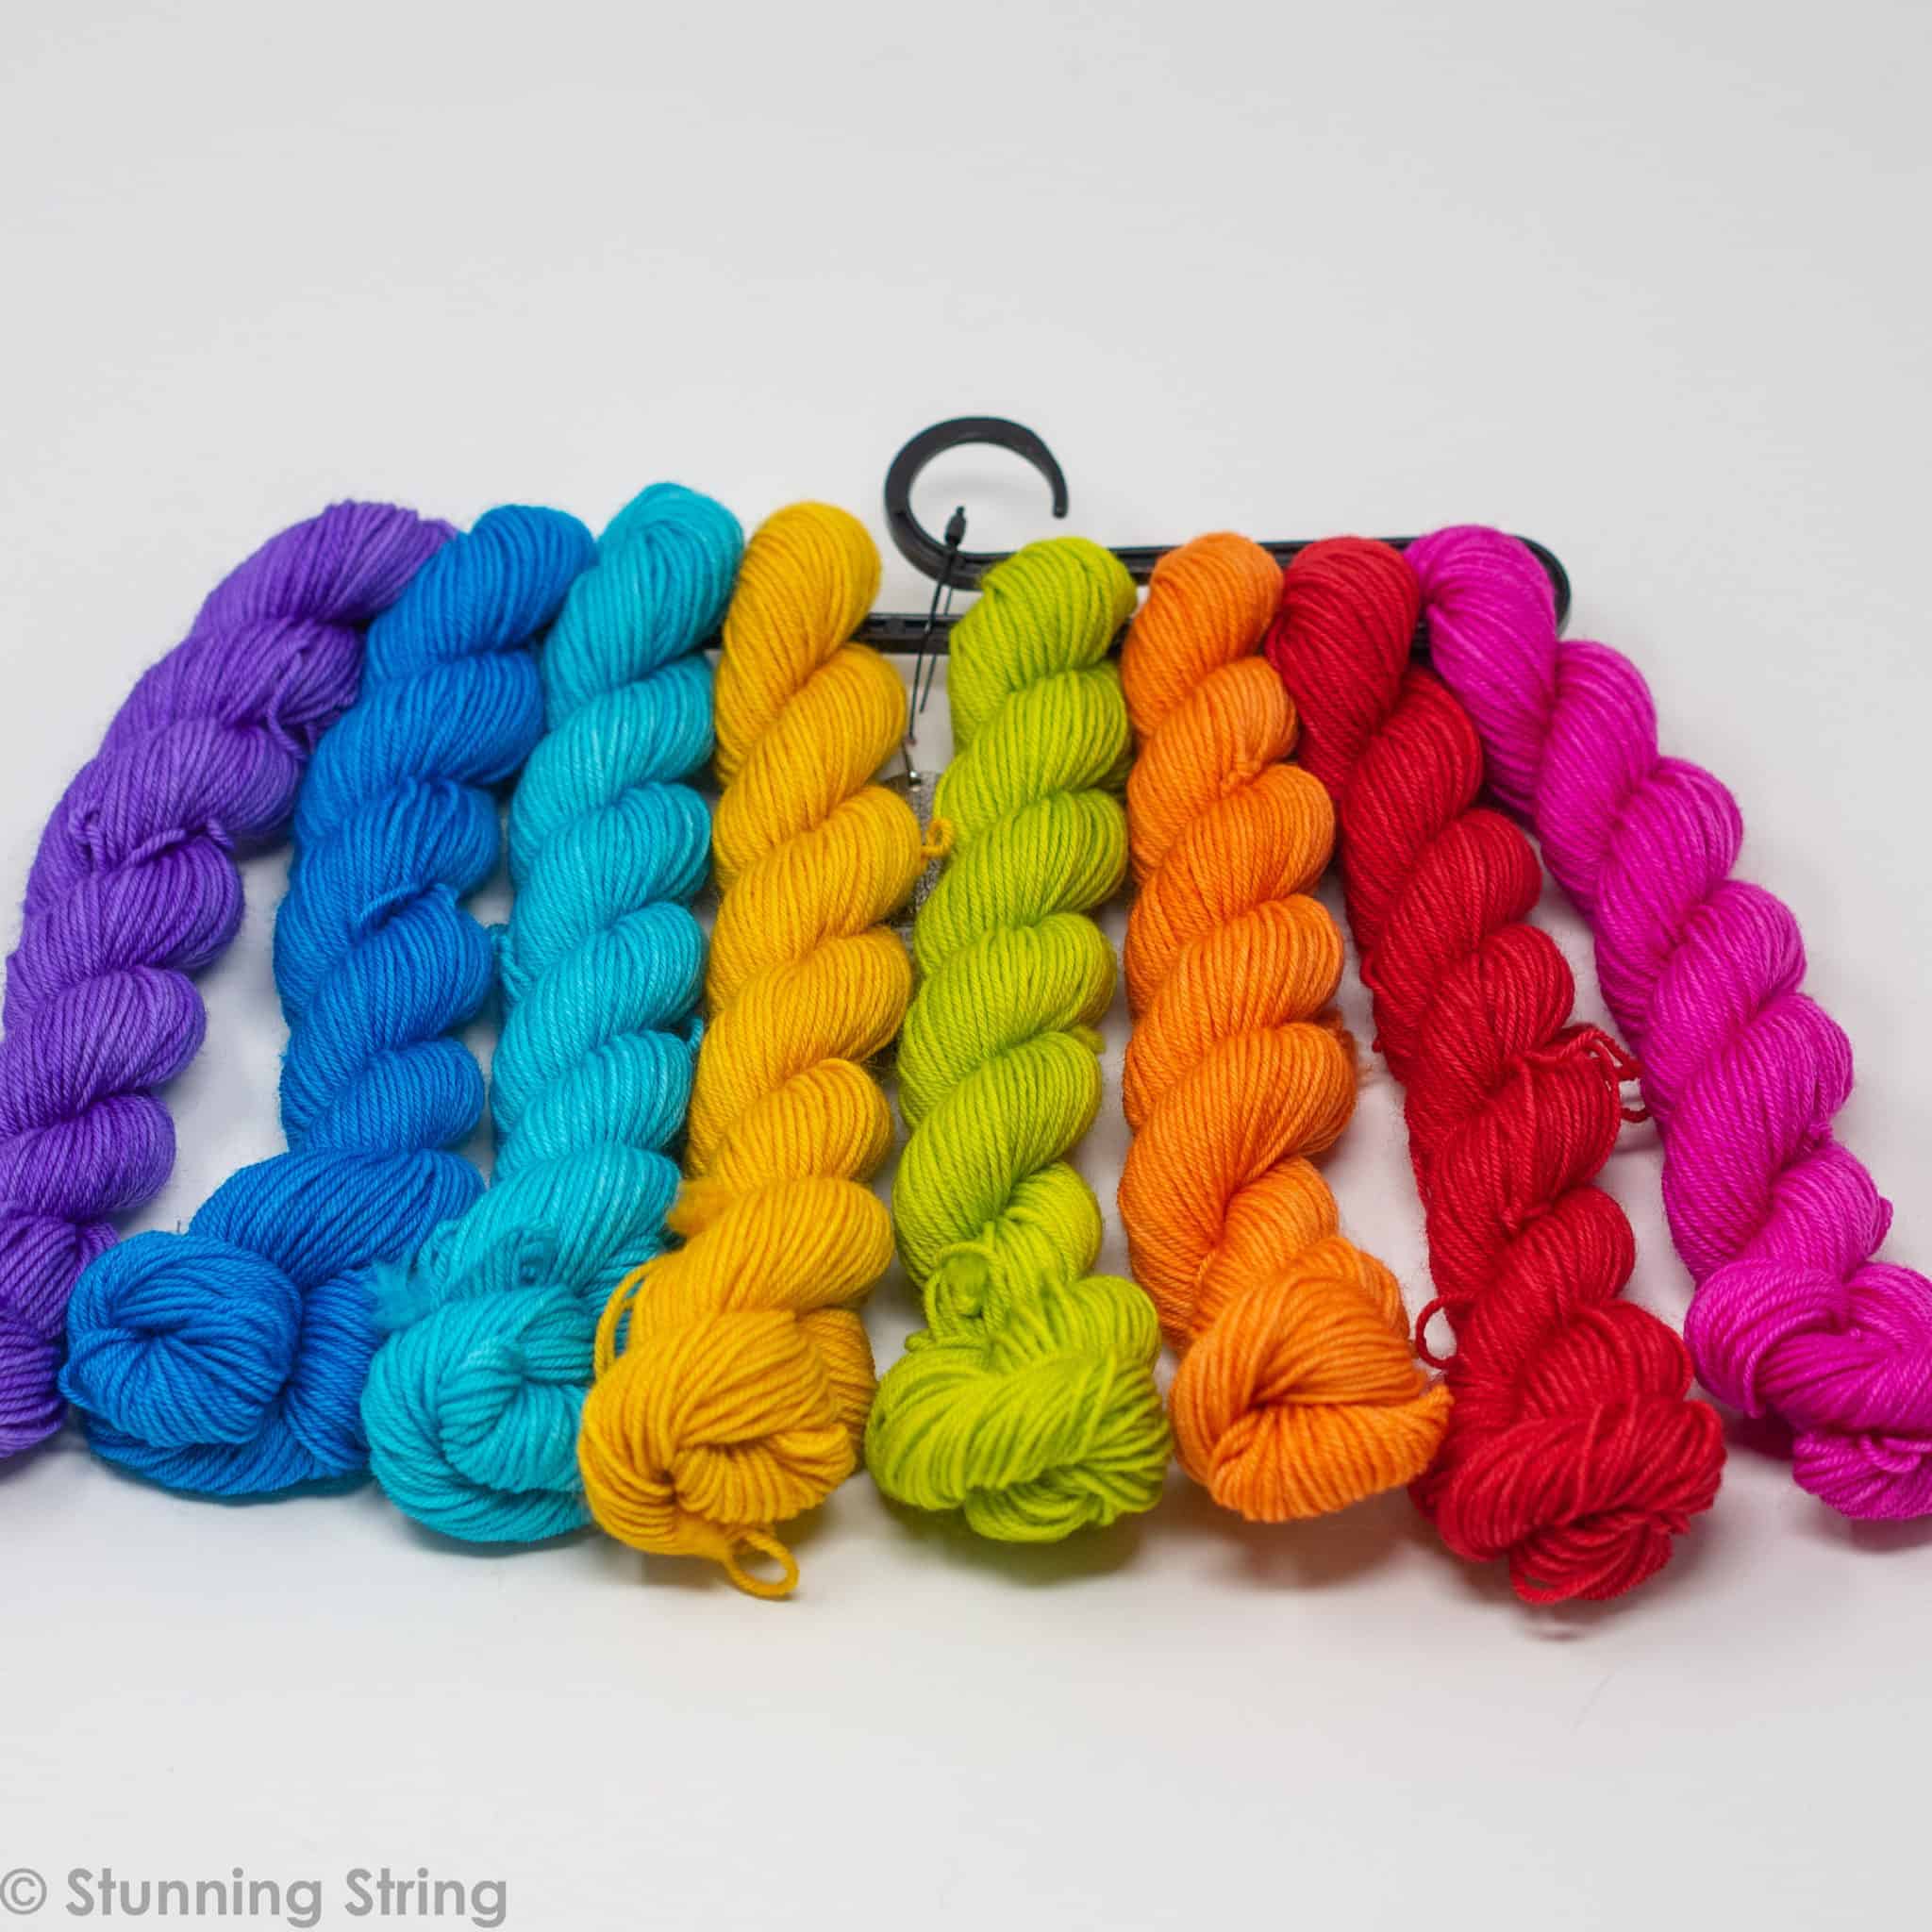  MOJADREAM 20 Skeins * 30g Crochet Set Kit for